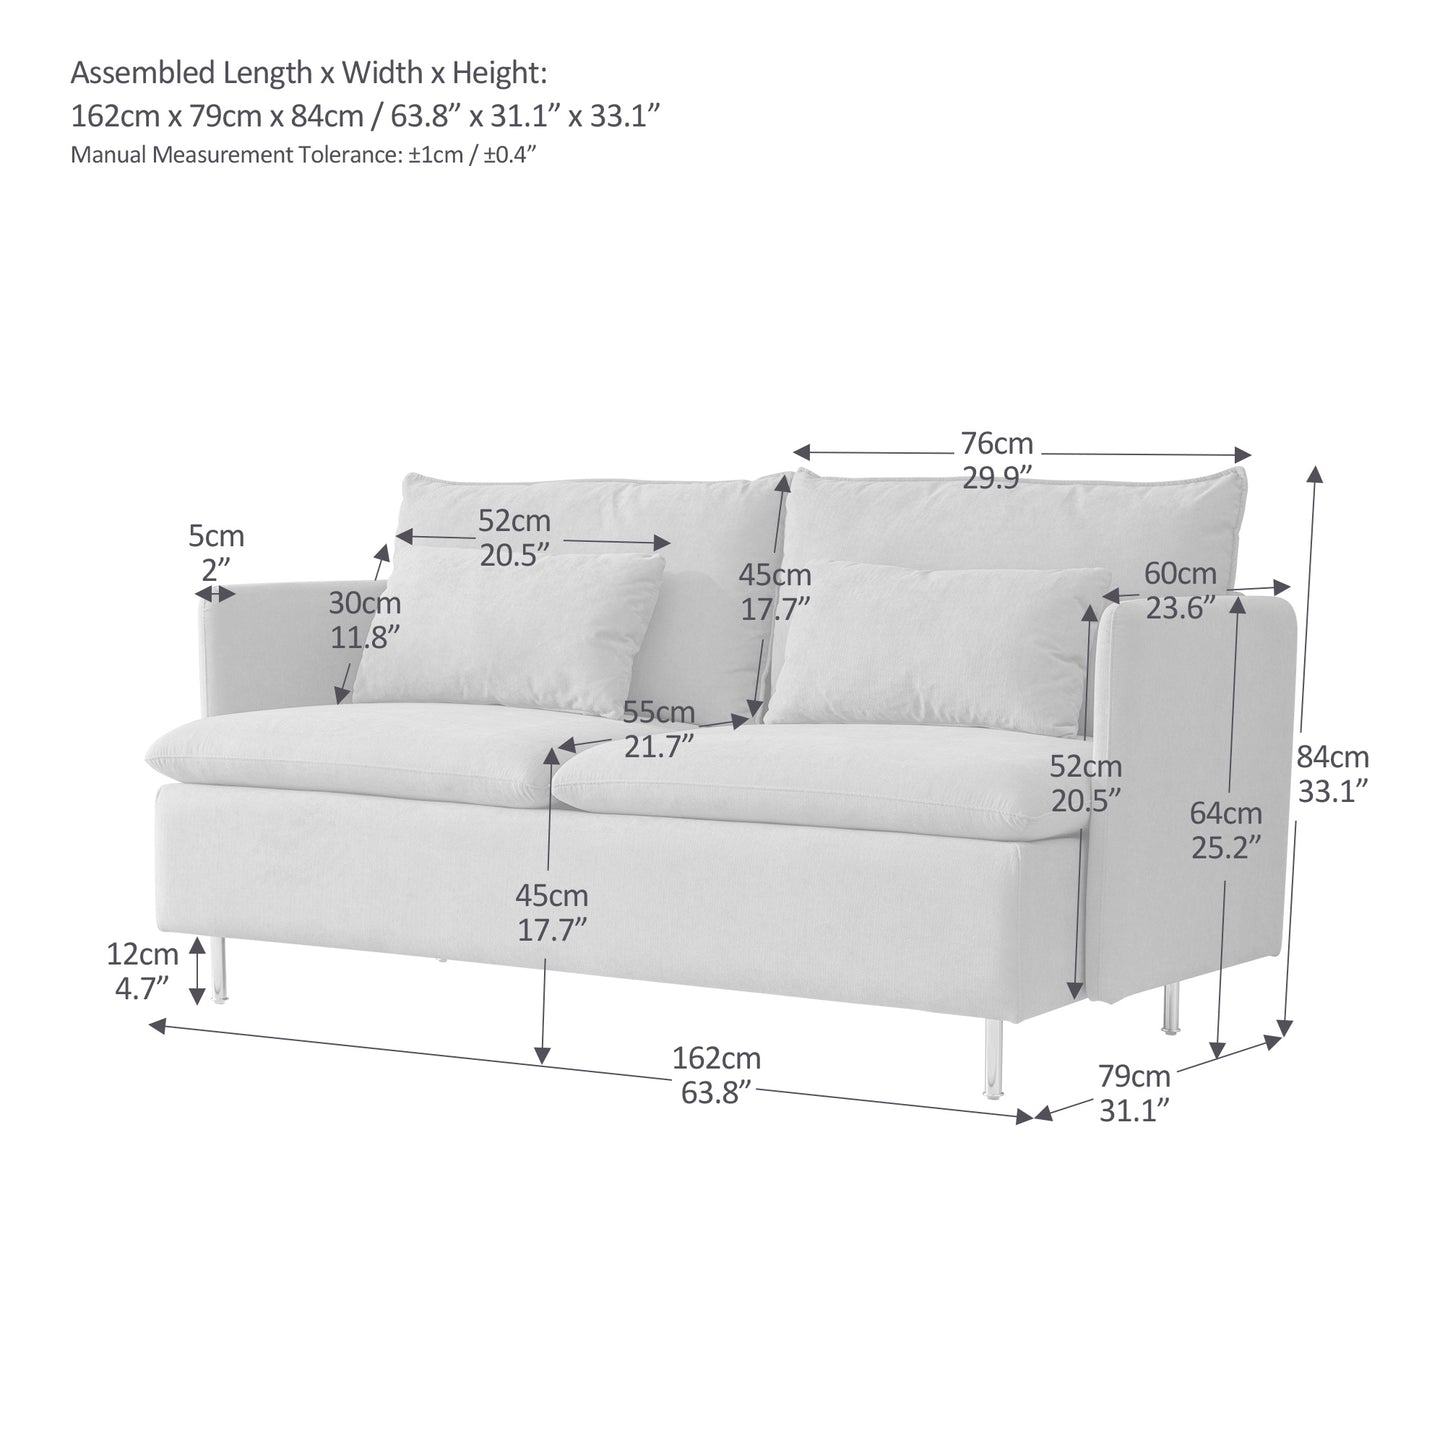 Modern Upholstered Loveseat Sofa,Orange Cotton Linen-63.8''